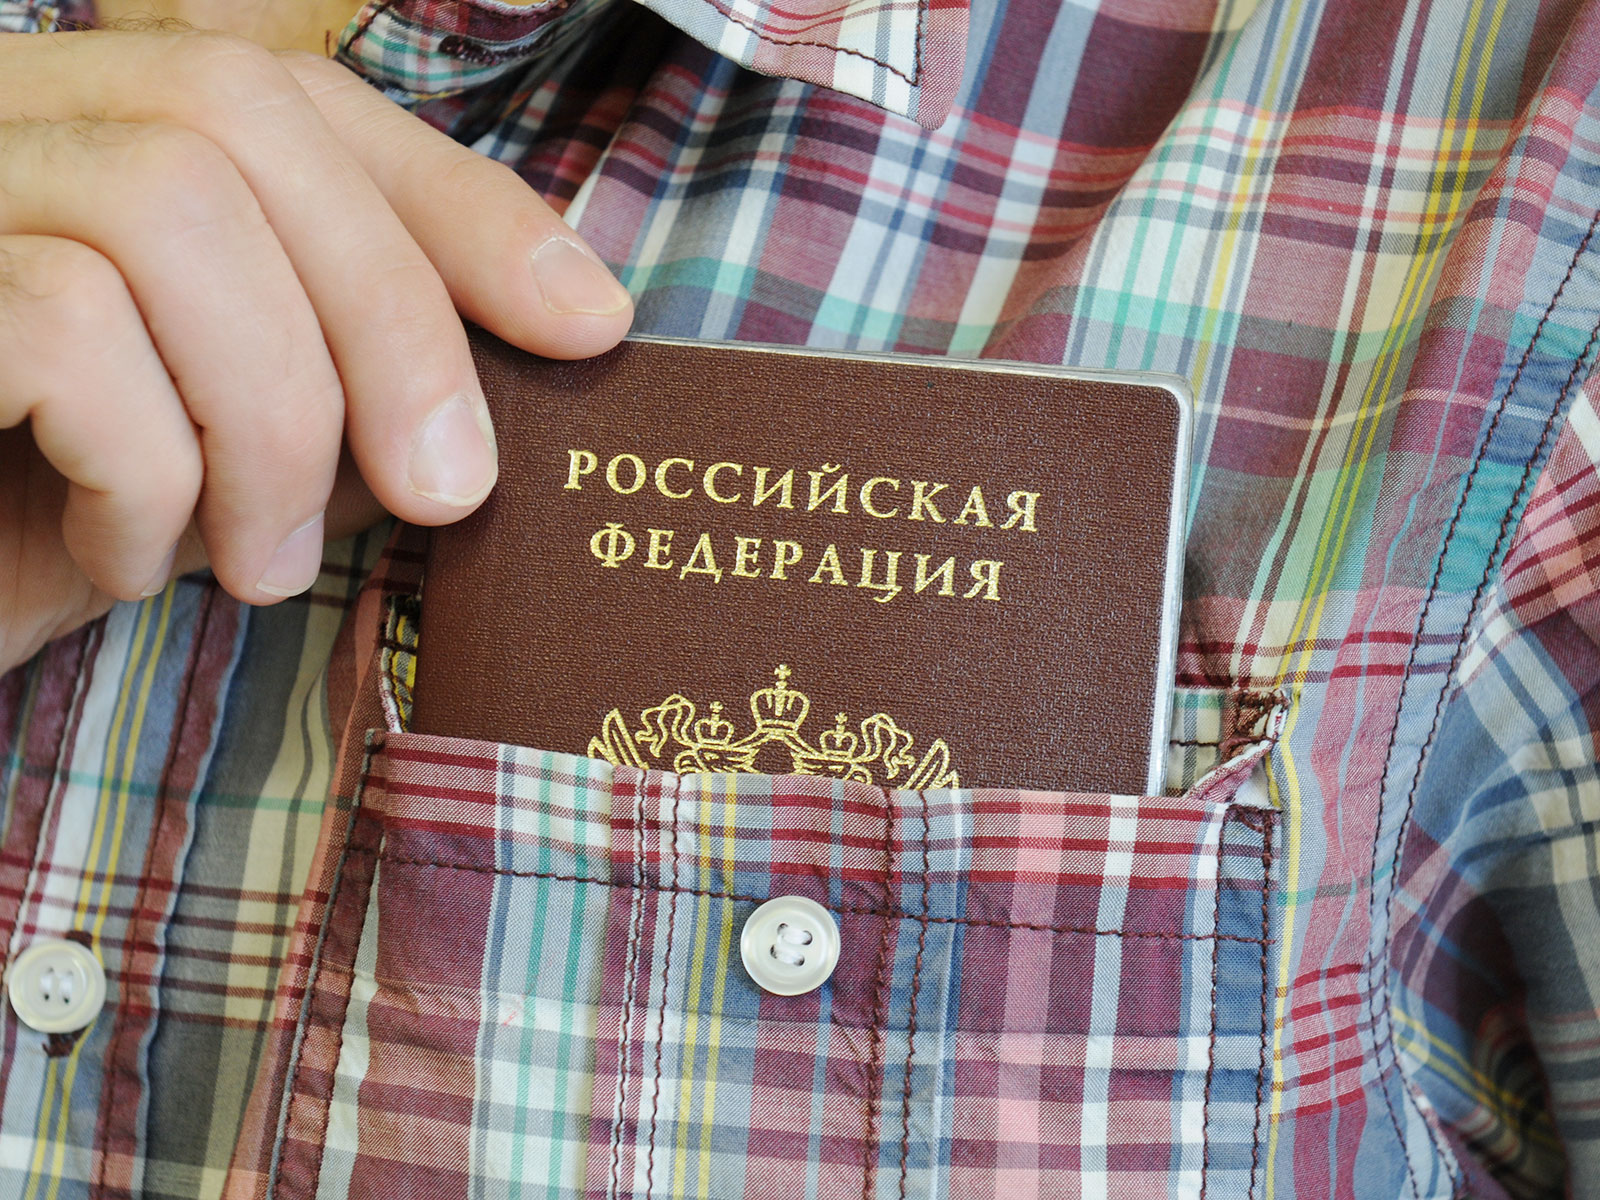 Житель Саранска нашел на улице паспорт и взял с помощью него кредит